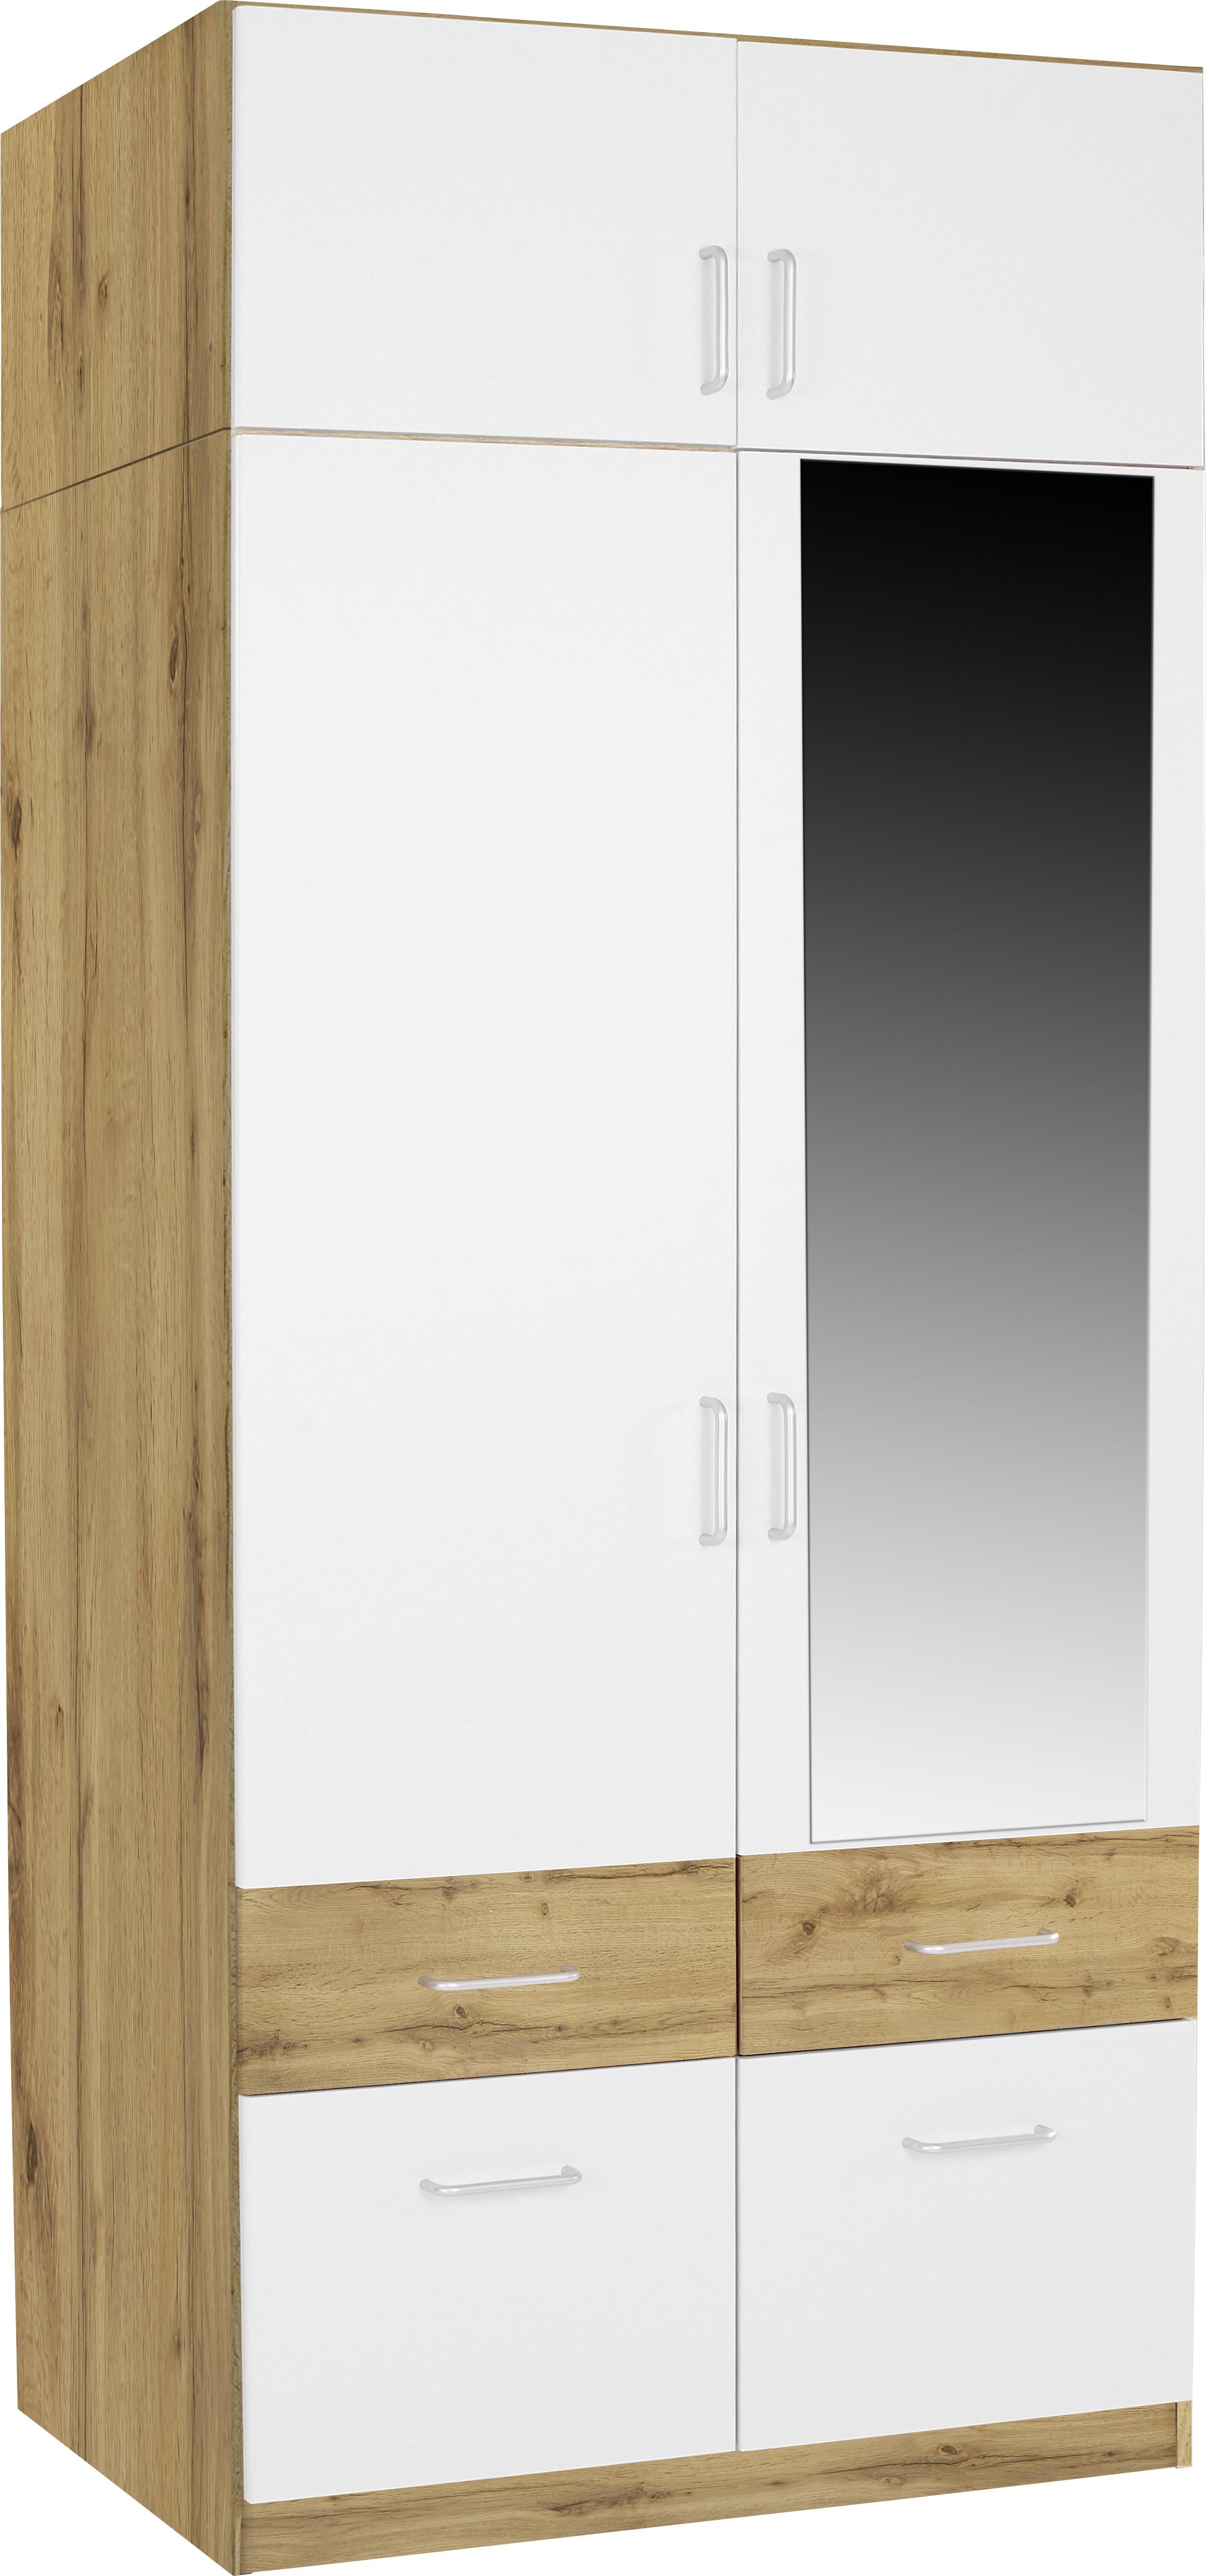 Dulap auxiliar superior Aalen Extra - alb/culoare lemn stejar, Konventionell, material pe bază de lemn (91/39/54cm)